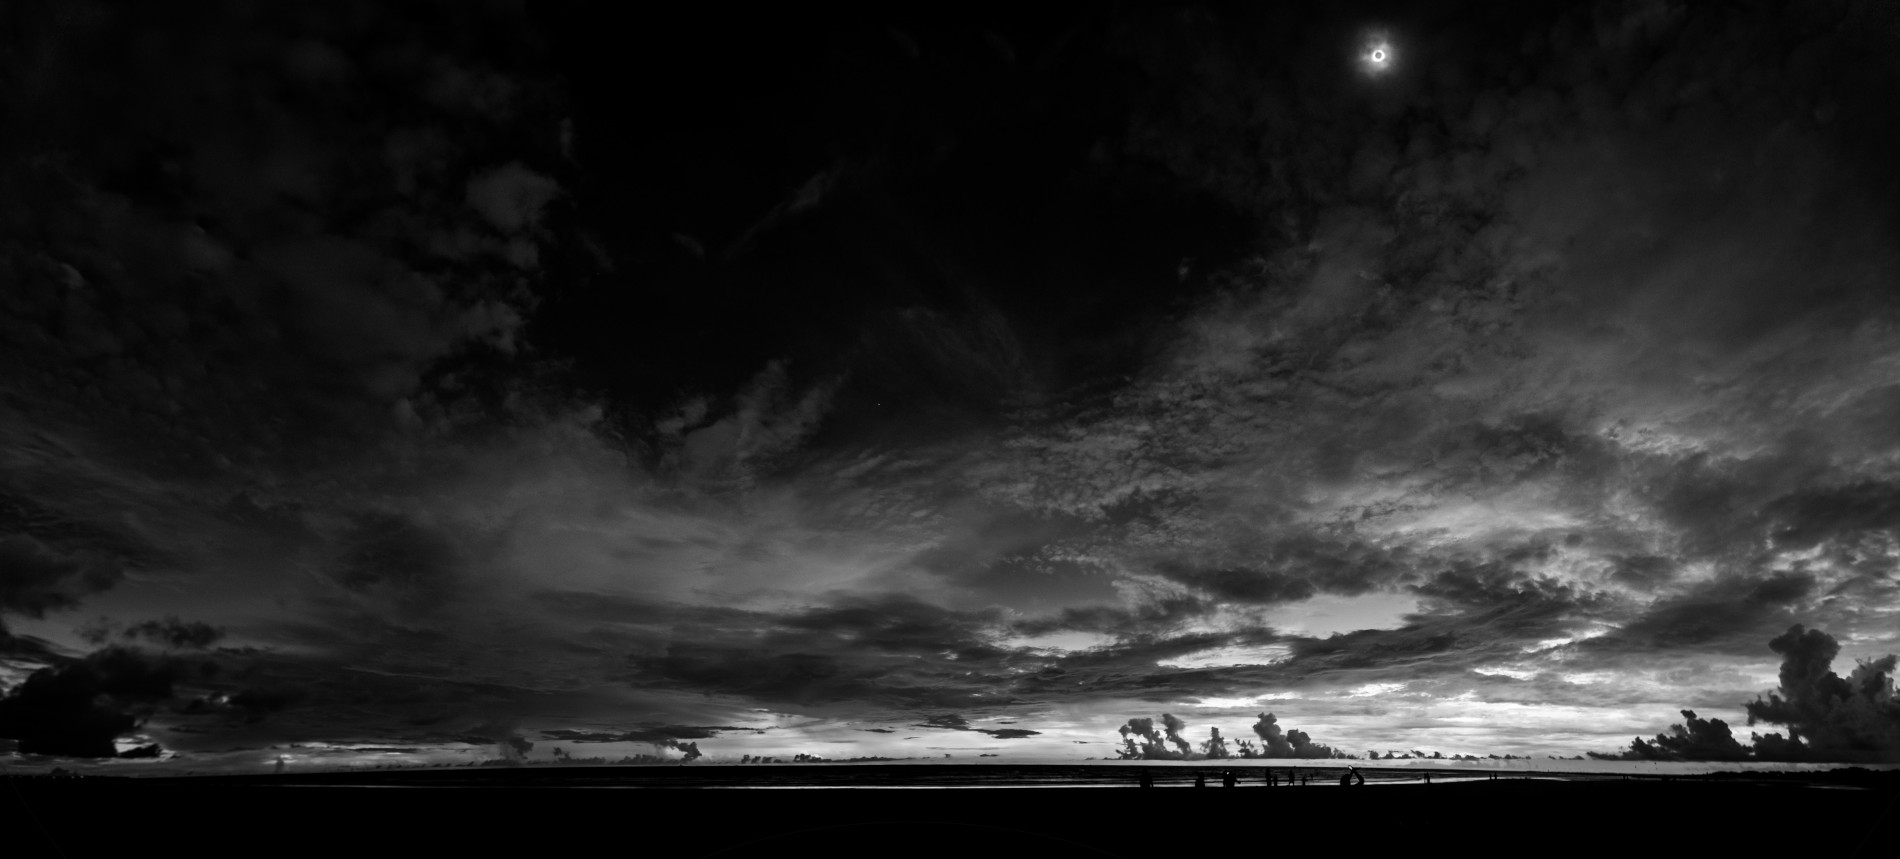 Fotografia de uma paisagem em preto e branco. Mais de noventa por cento da fotografia é o céu com núvens e à direita uma pequena lua.